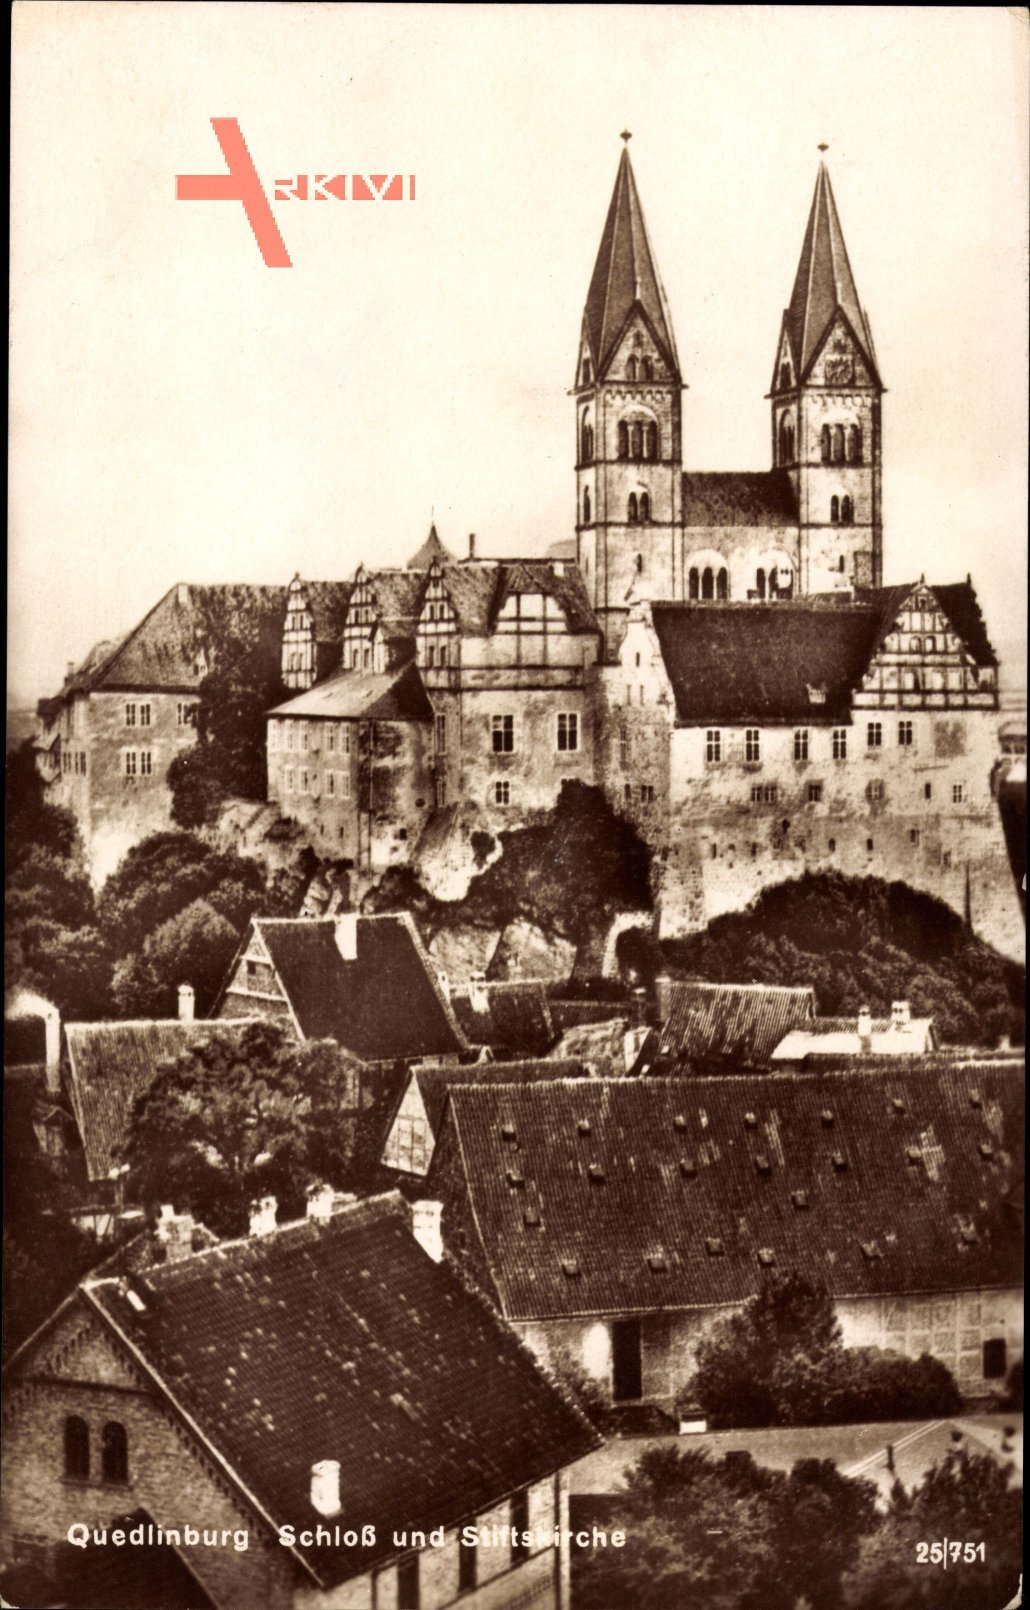 Quedlinburg im Harz, Blick auf Schloß und Stiftskirche